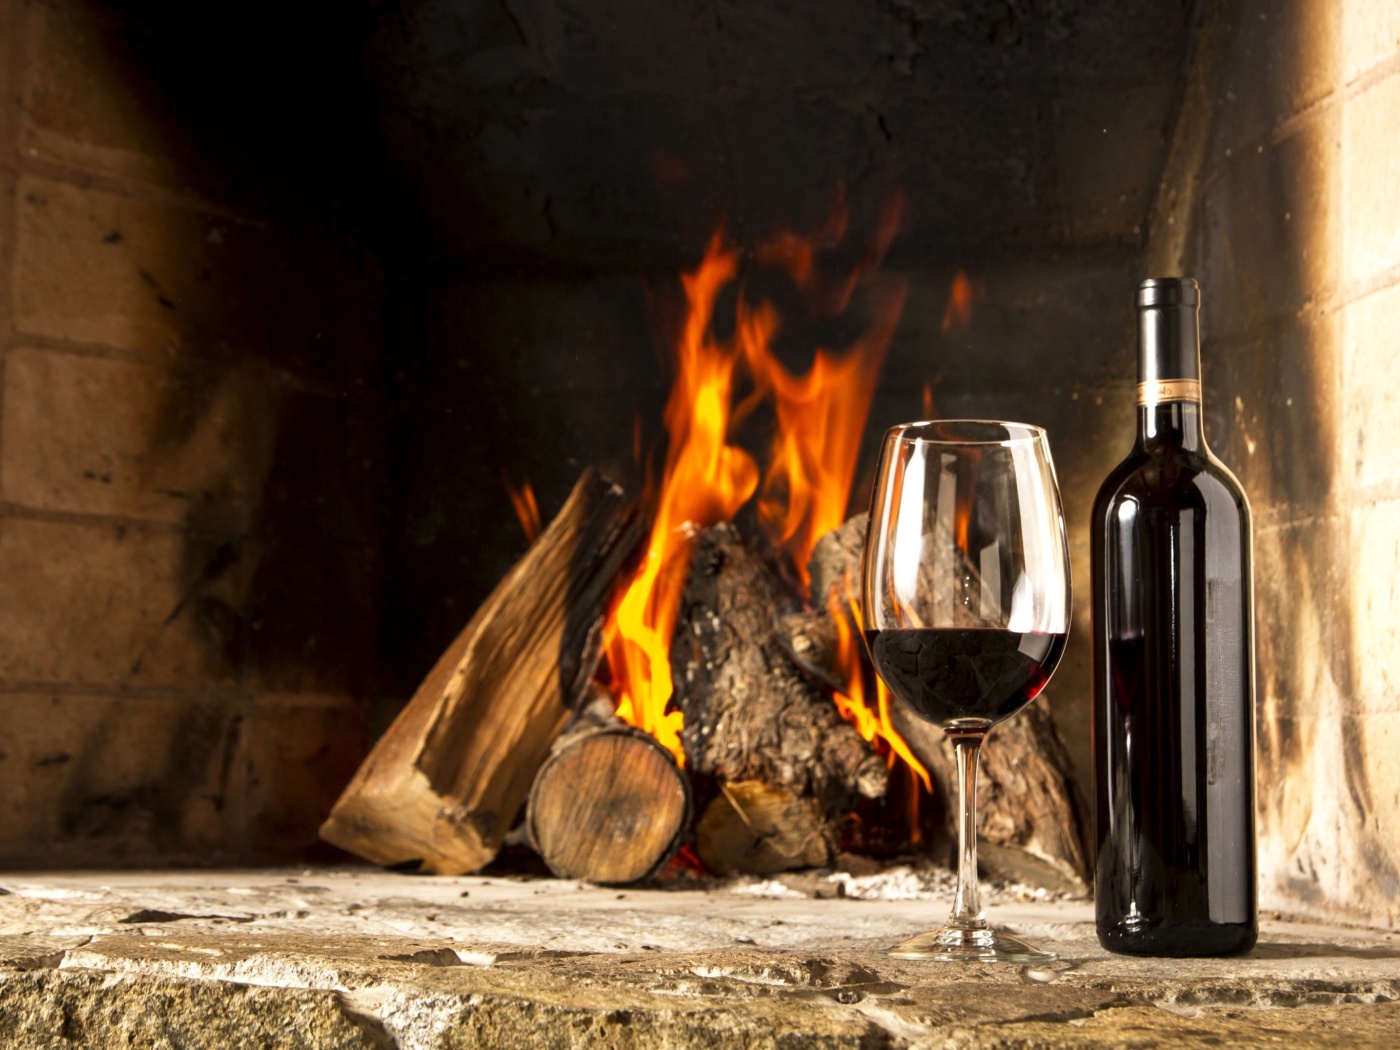 Обои Wine and fireplace 1400x1050